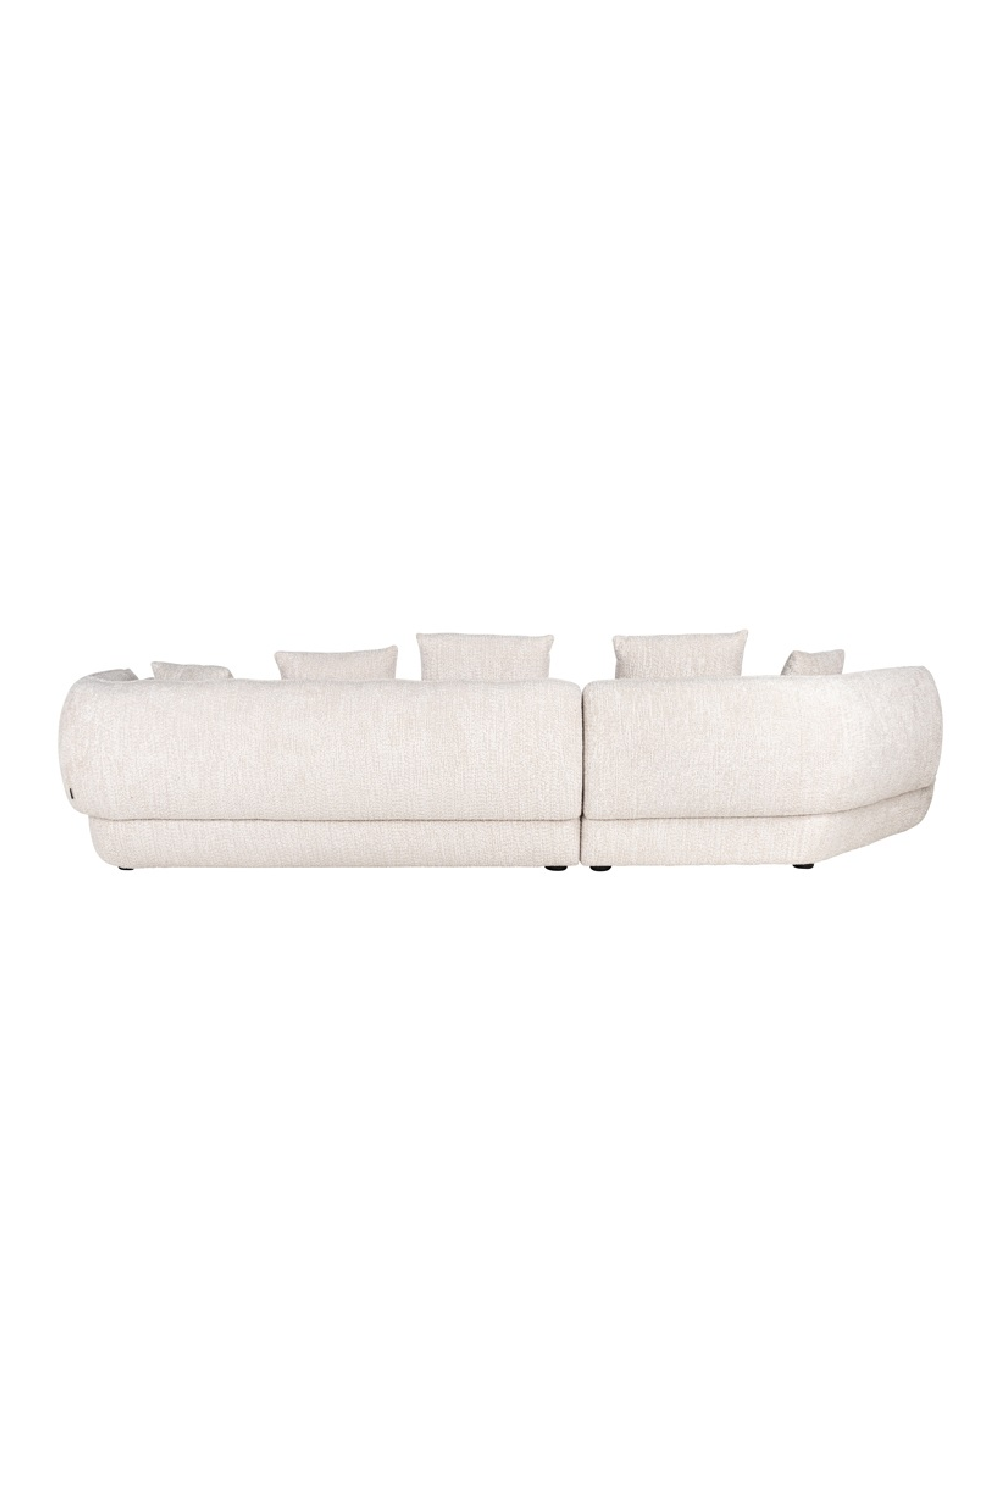 Modern Minimalist Sofa | OROA Rodina | Oroa.com